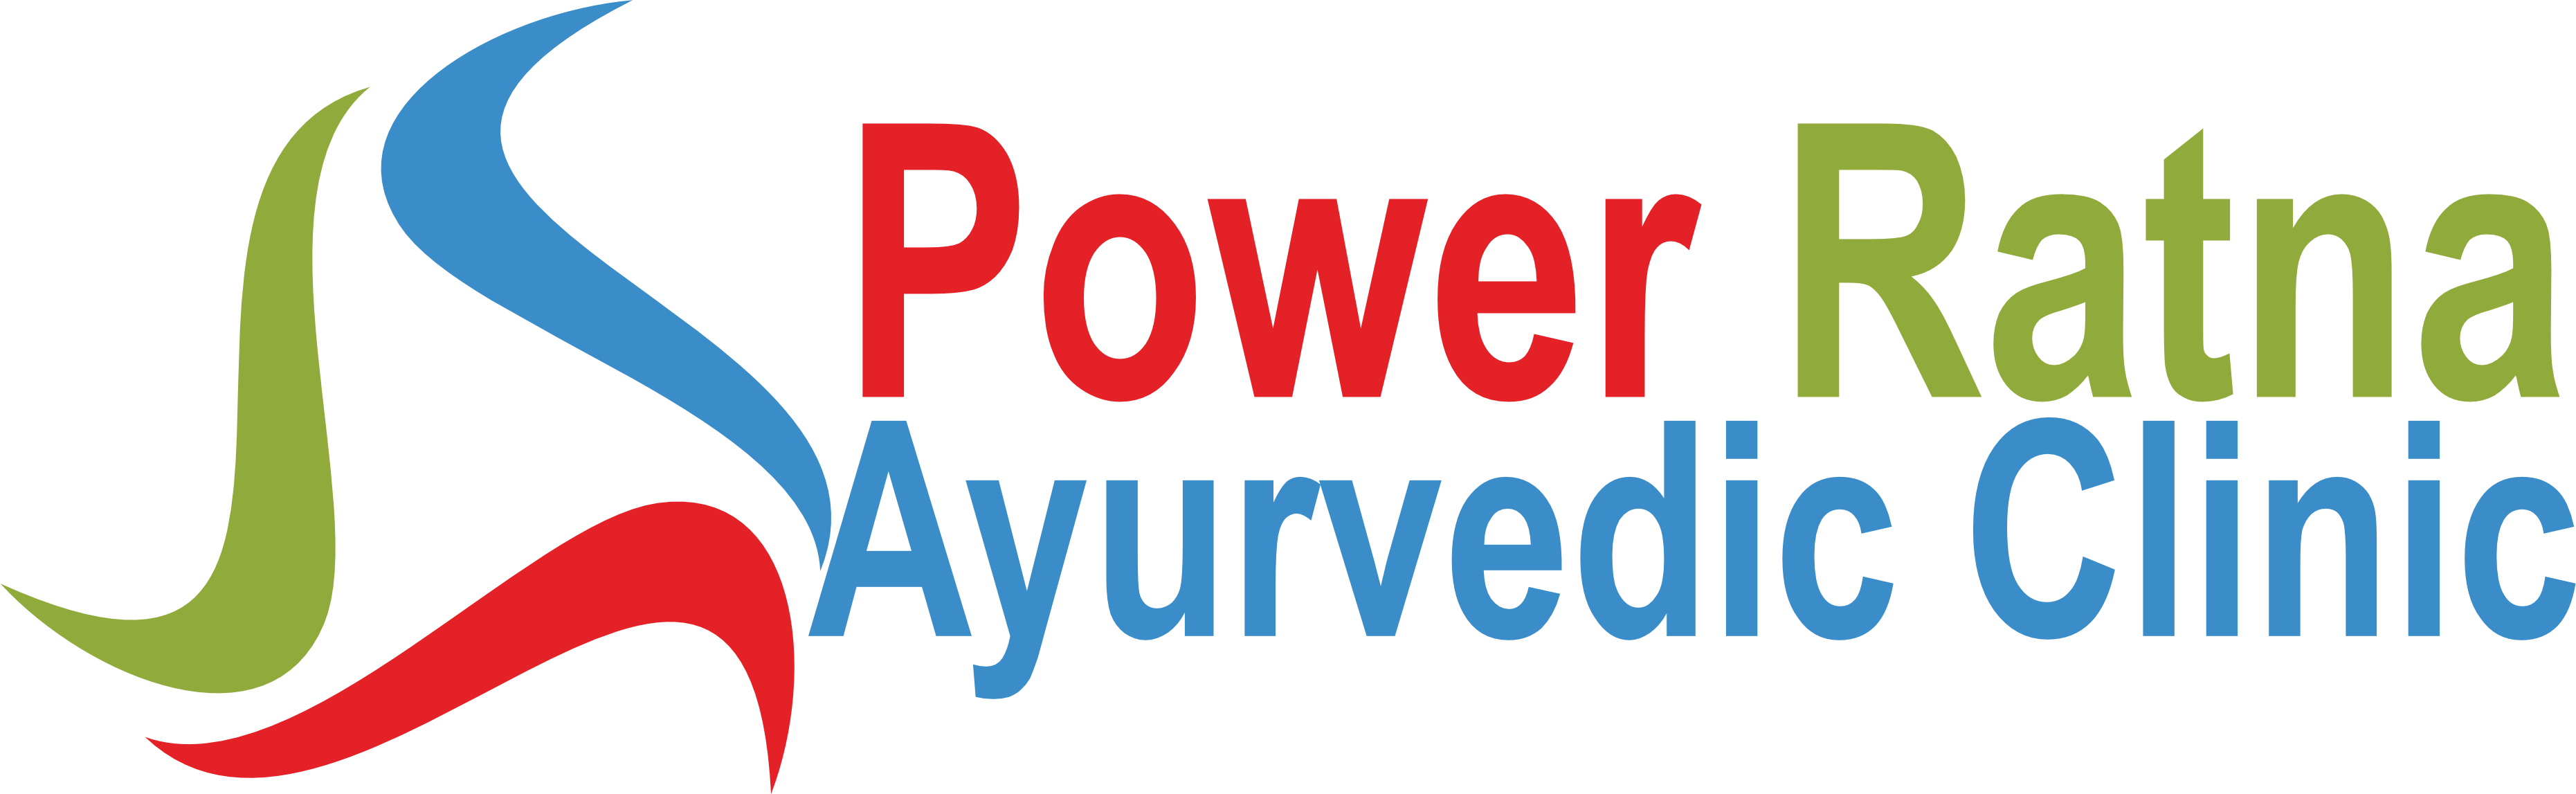 Power Ratna Ayurvedic clinic